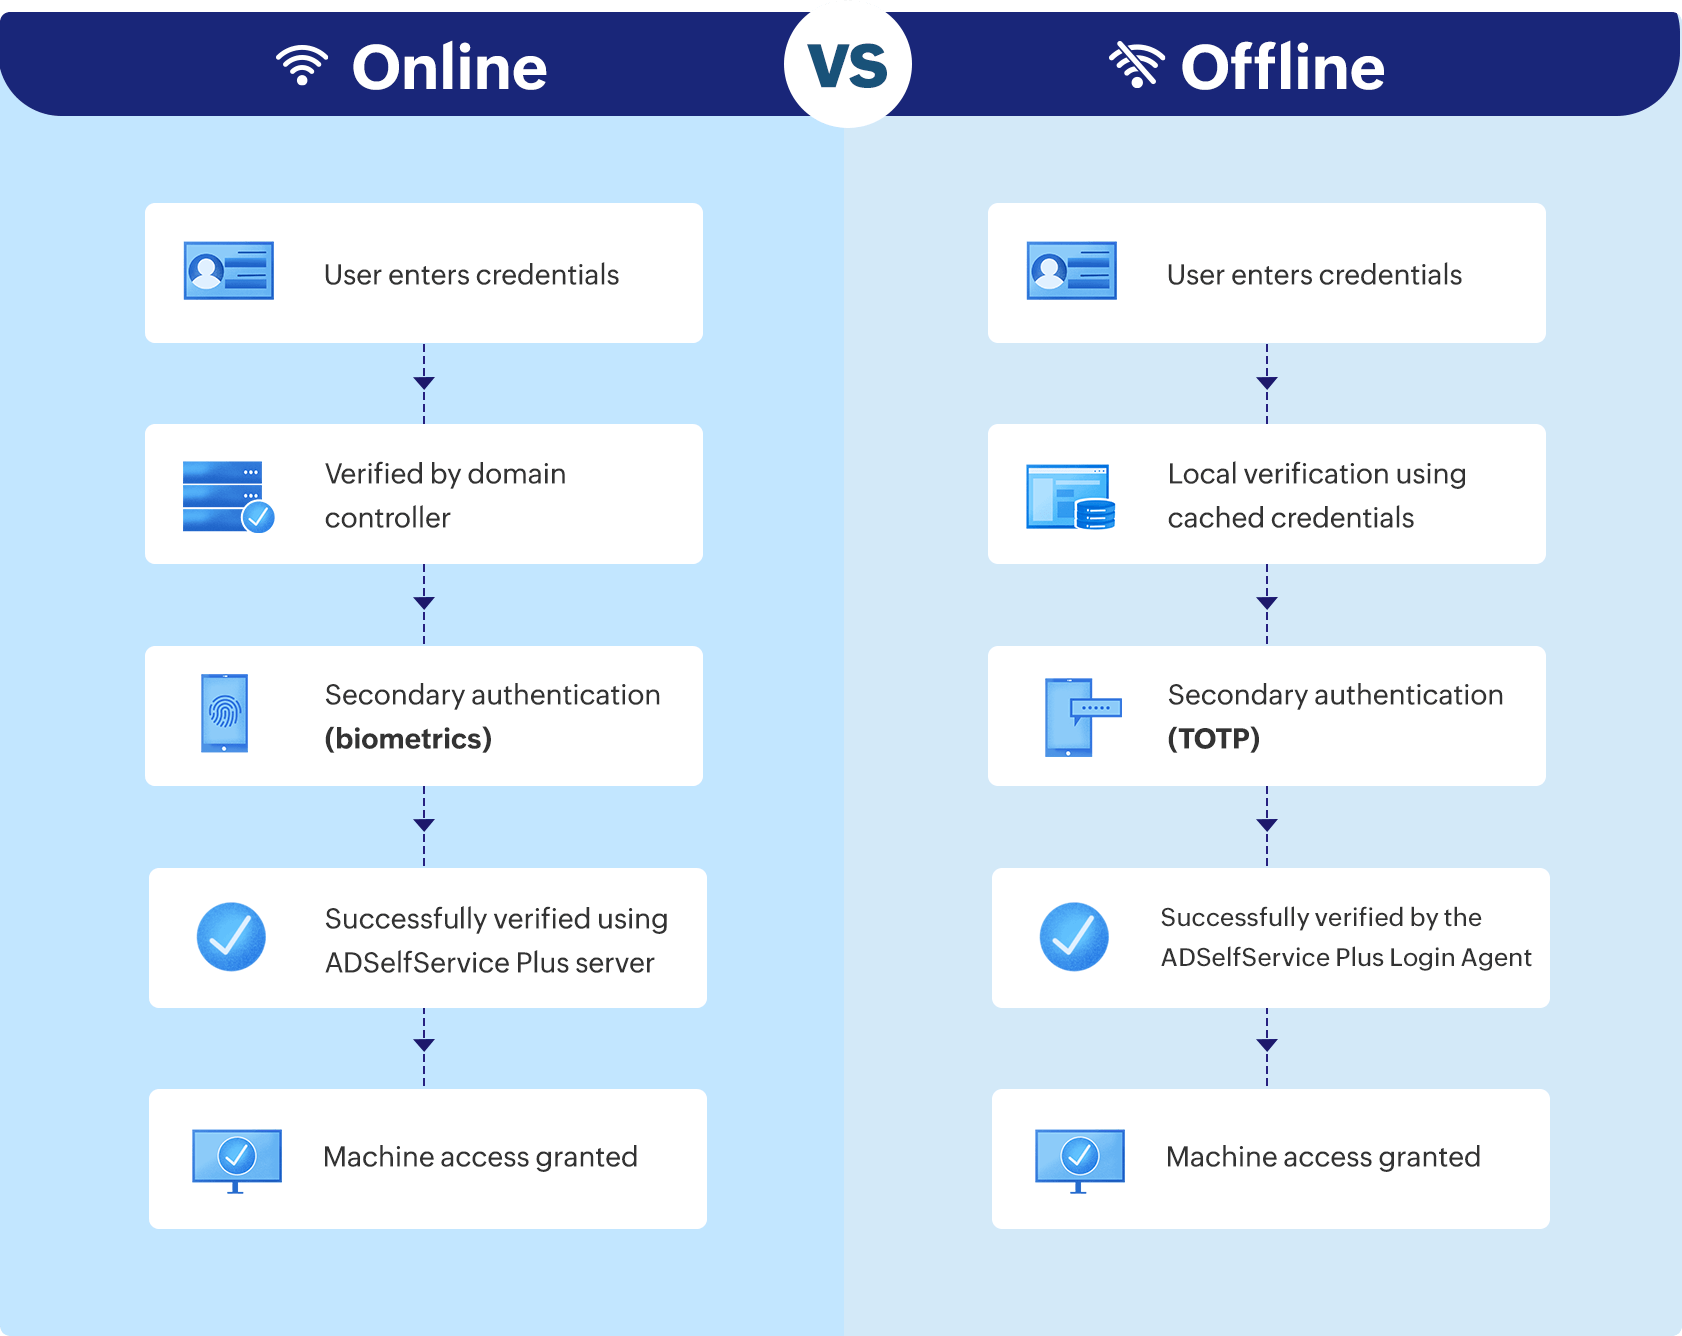 Online and Offline